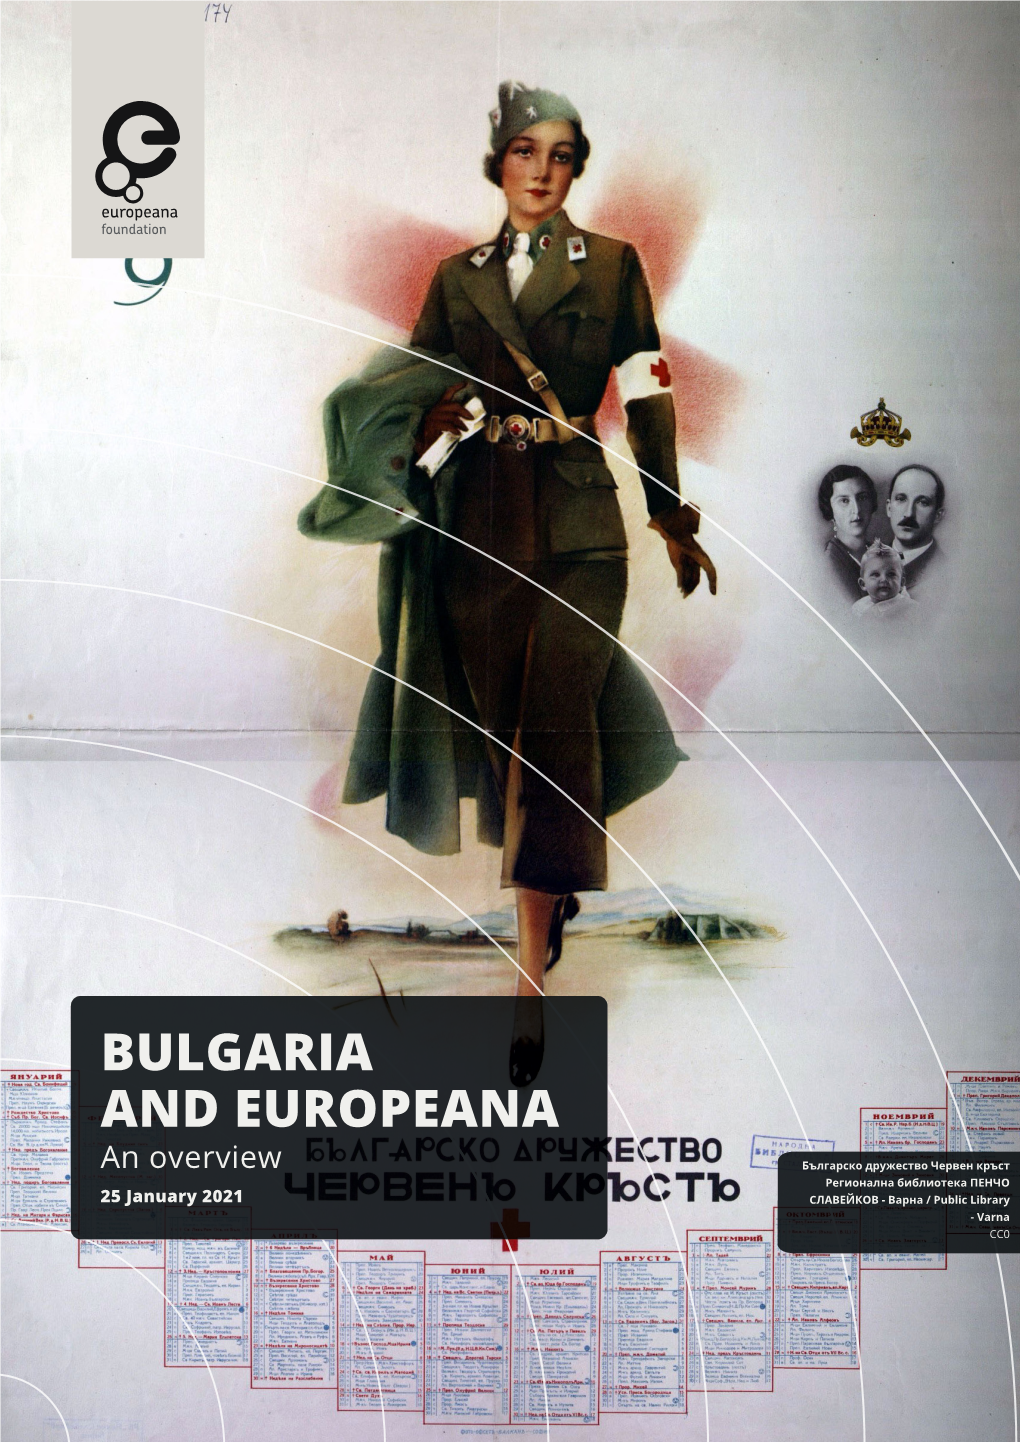 Bulgaria and Europeana